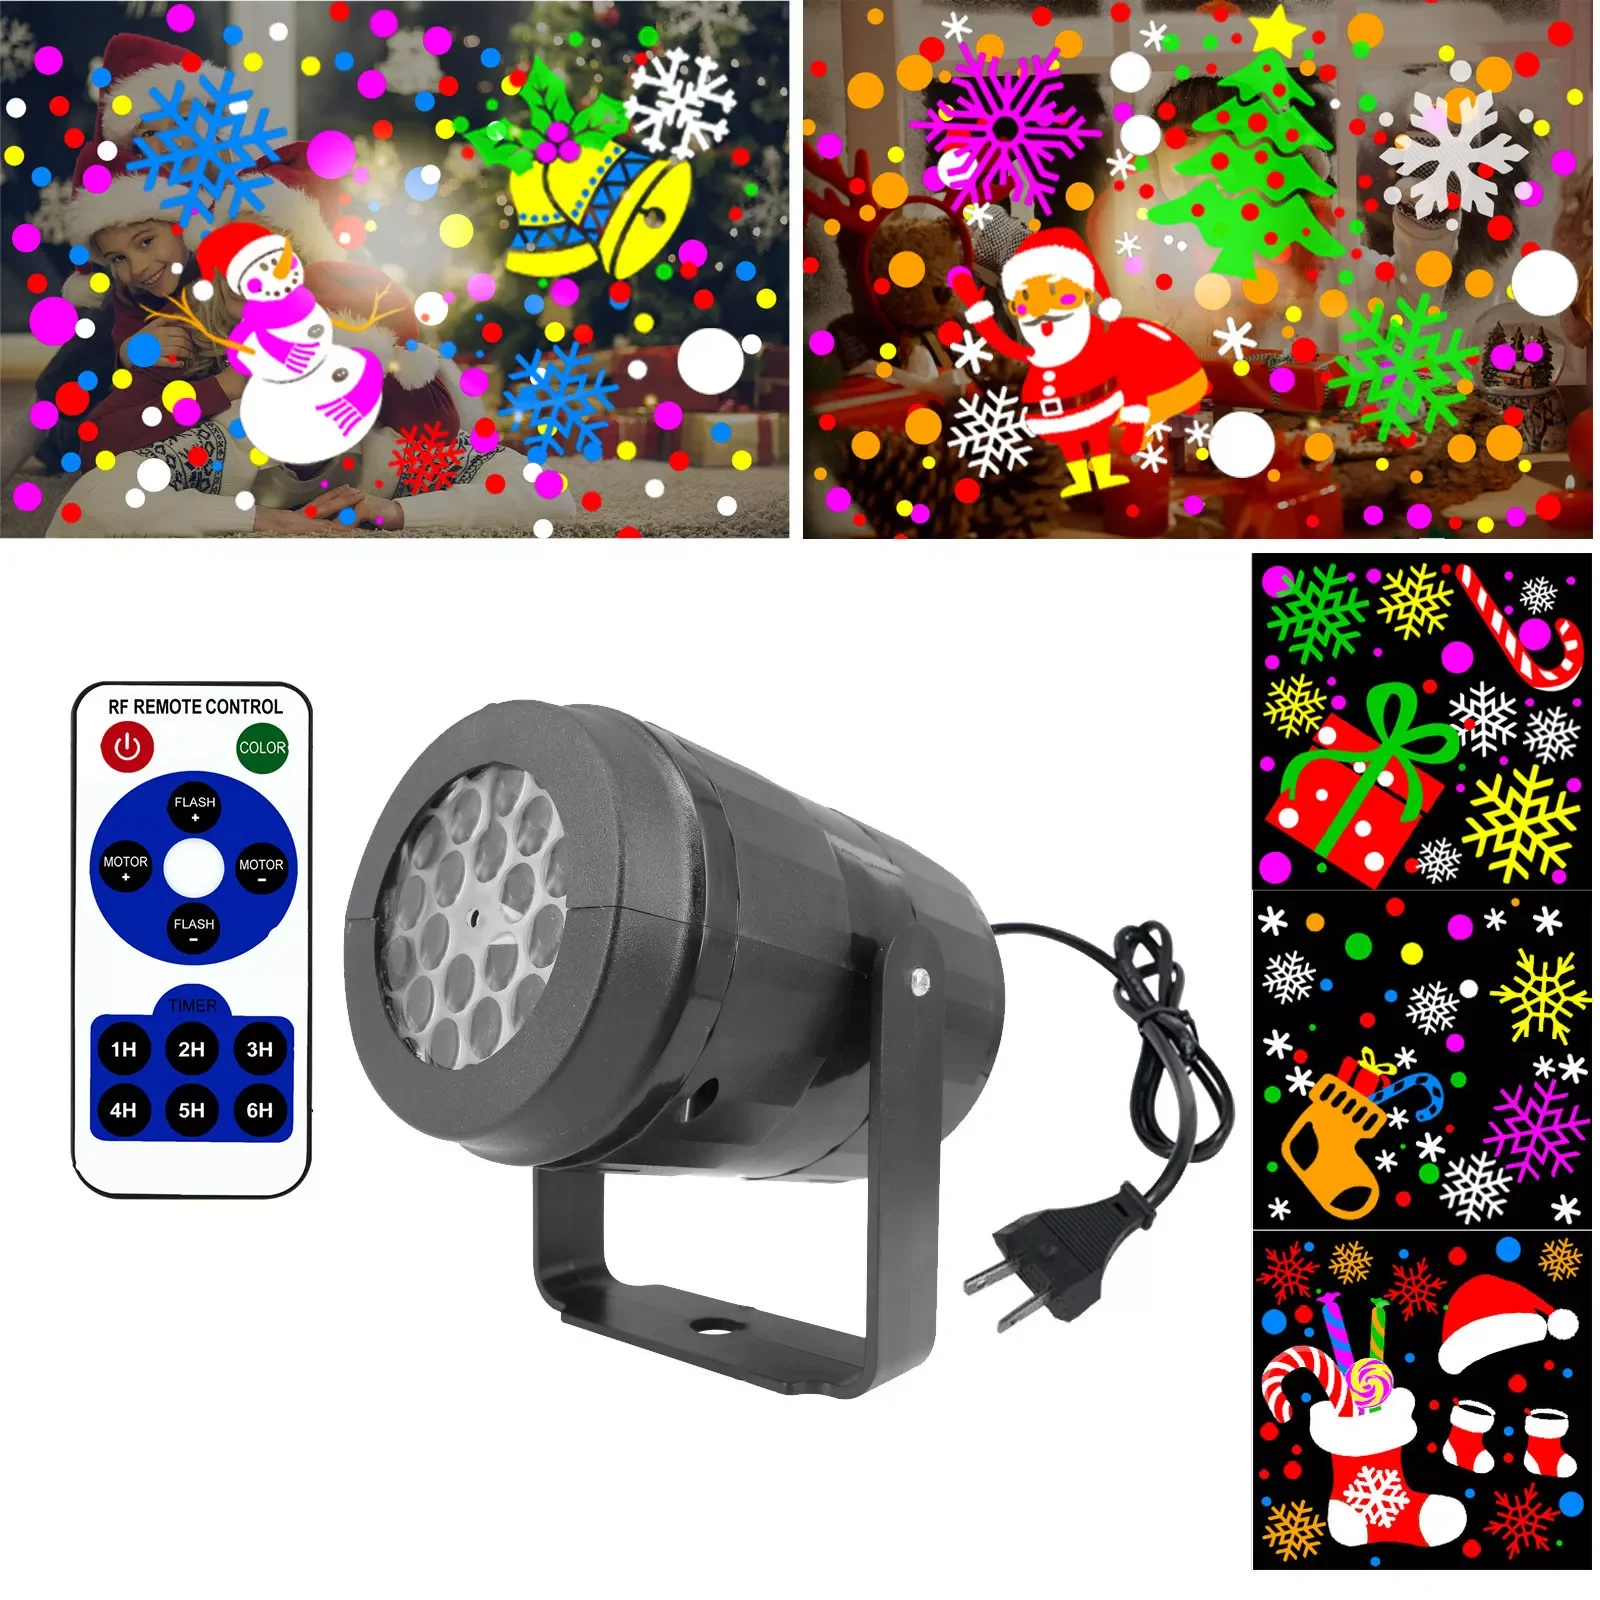 

Карманная Рождественская светодиодная проекционная лампа для игр на компьютере, для улицы, для газона, вращающаяся декоративная лампа, про...